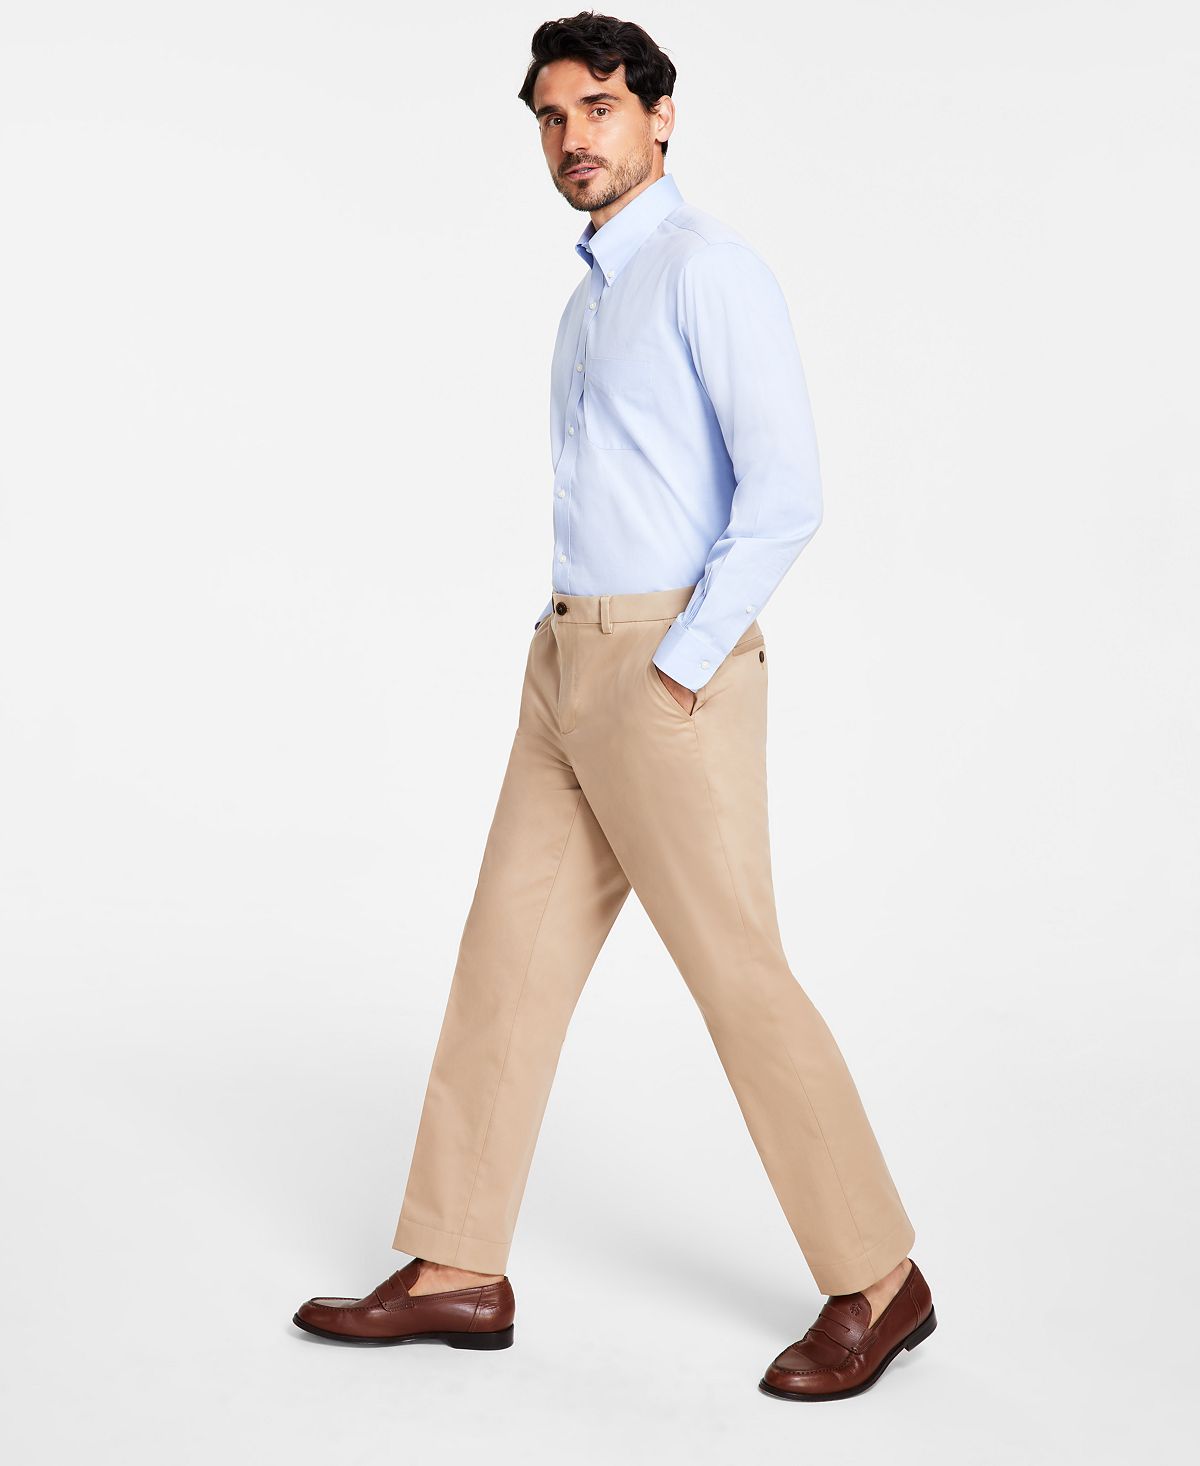 Мужские брюки-чиносы классического кроя из хлопка стрейч Brooks Brothers